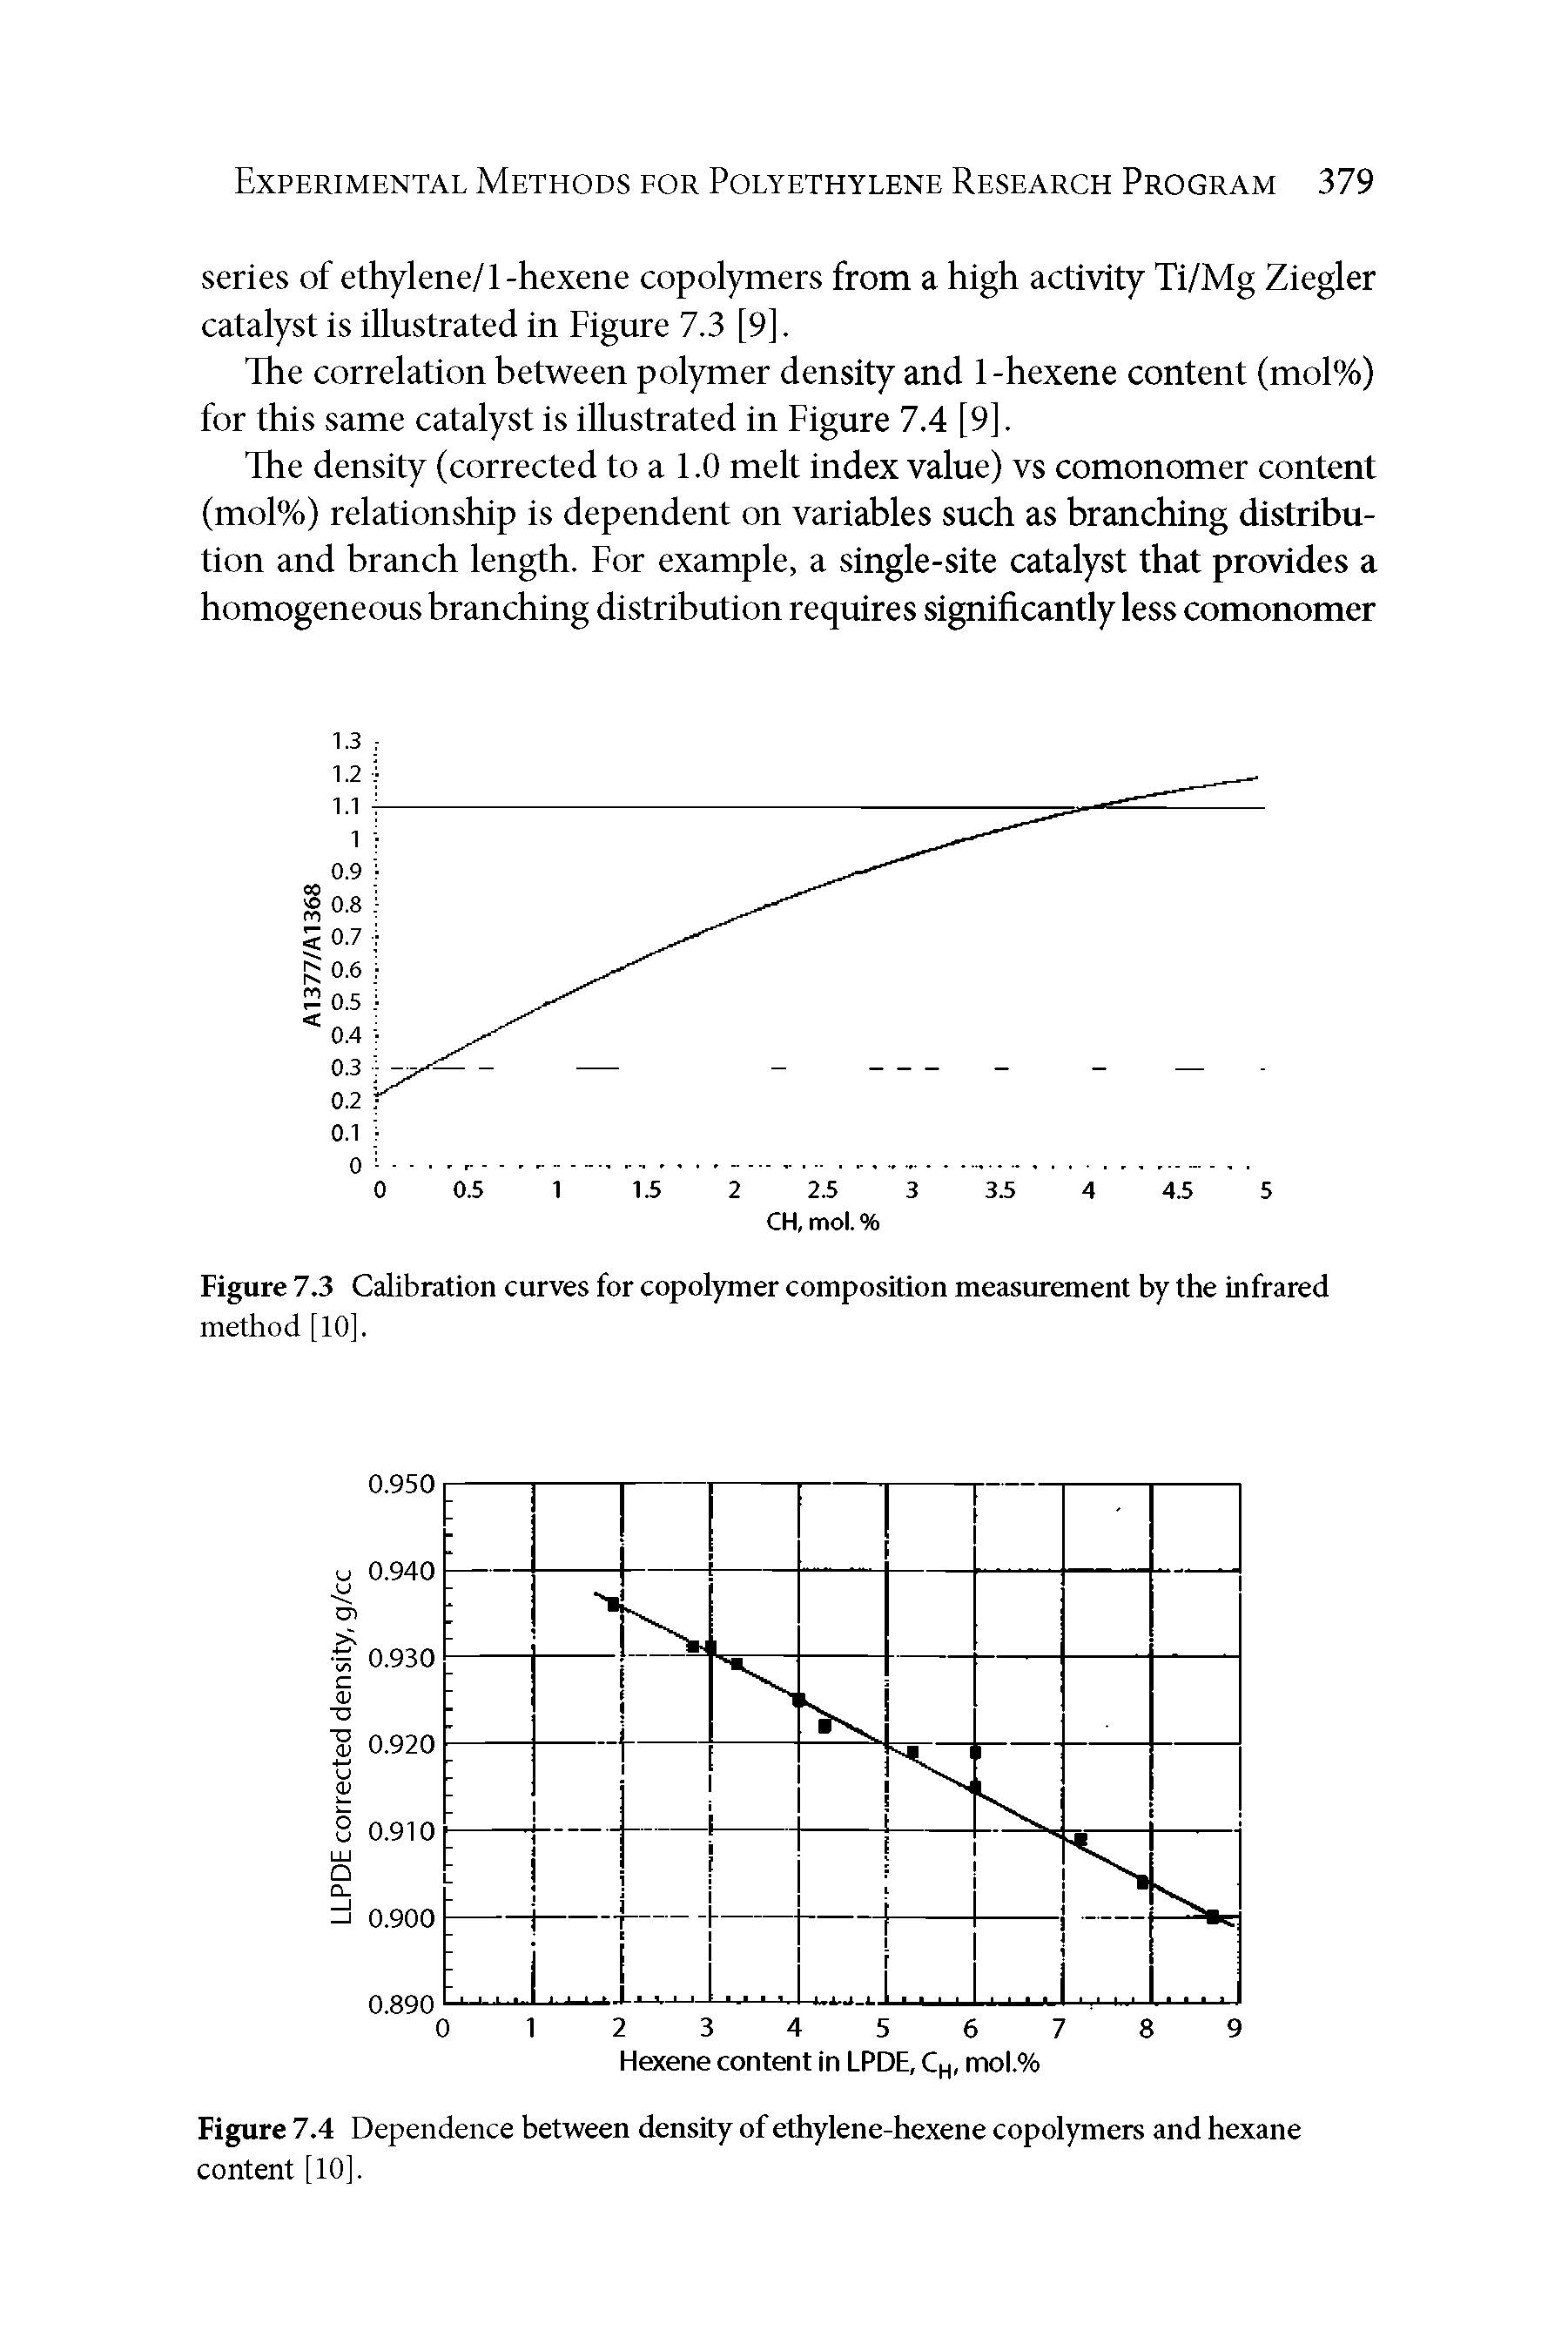 Figure 7.4 Dependence between density of ethylene-hexene copolymers and hexane content [10].